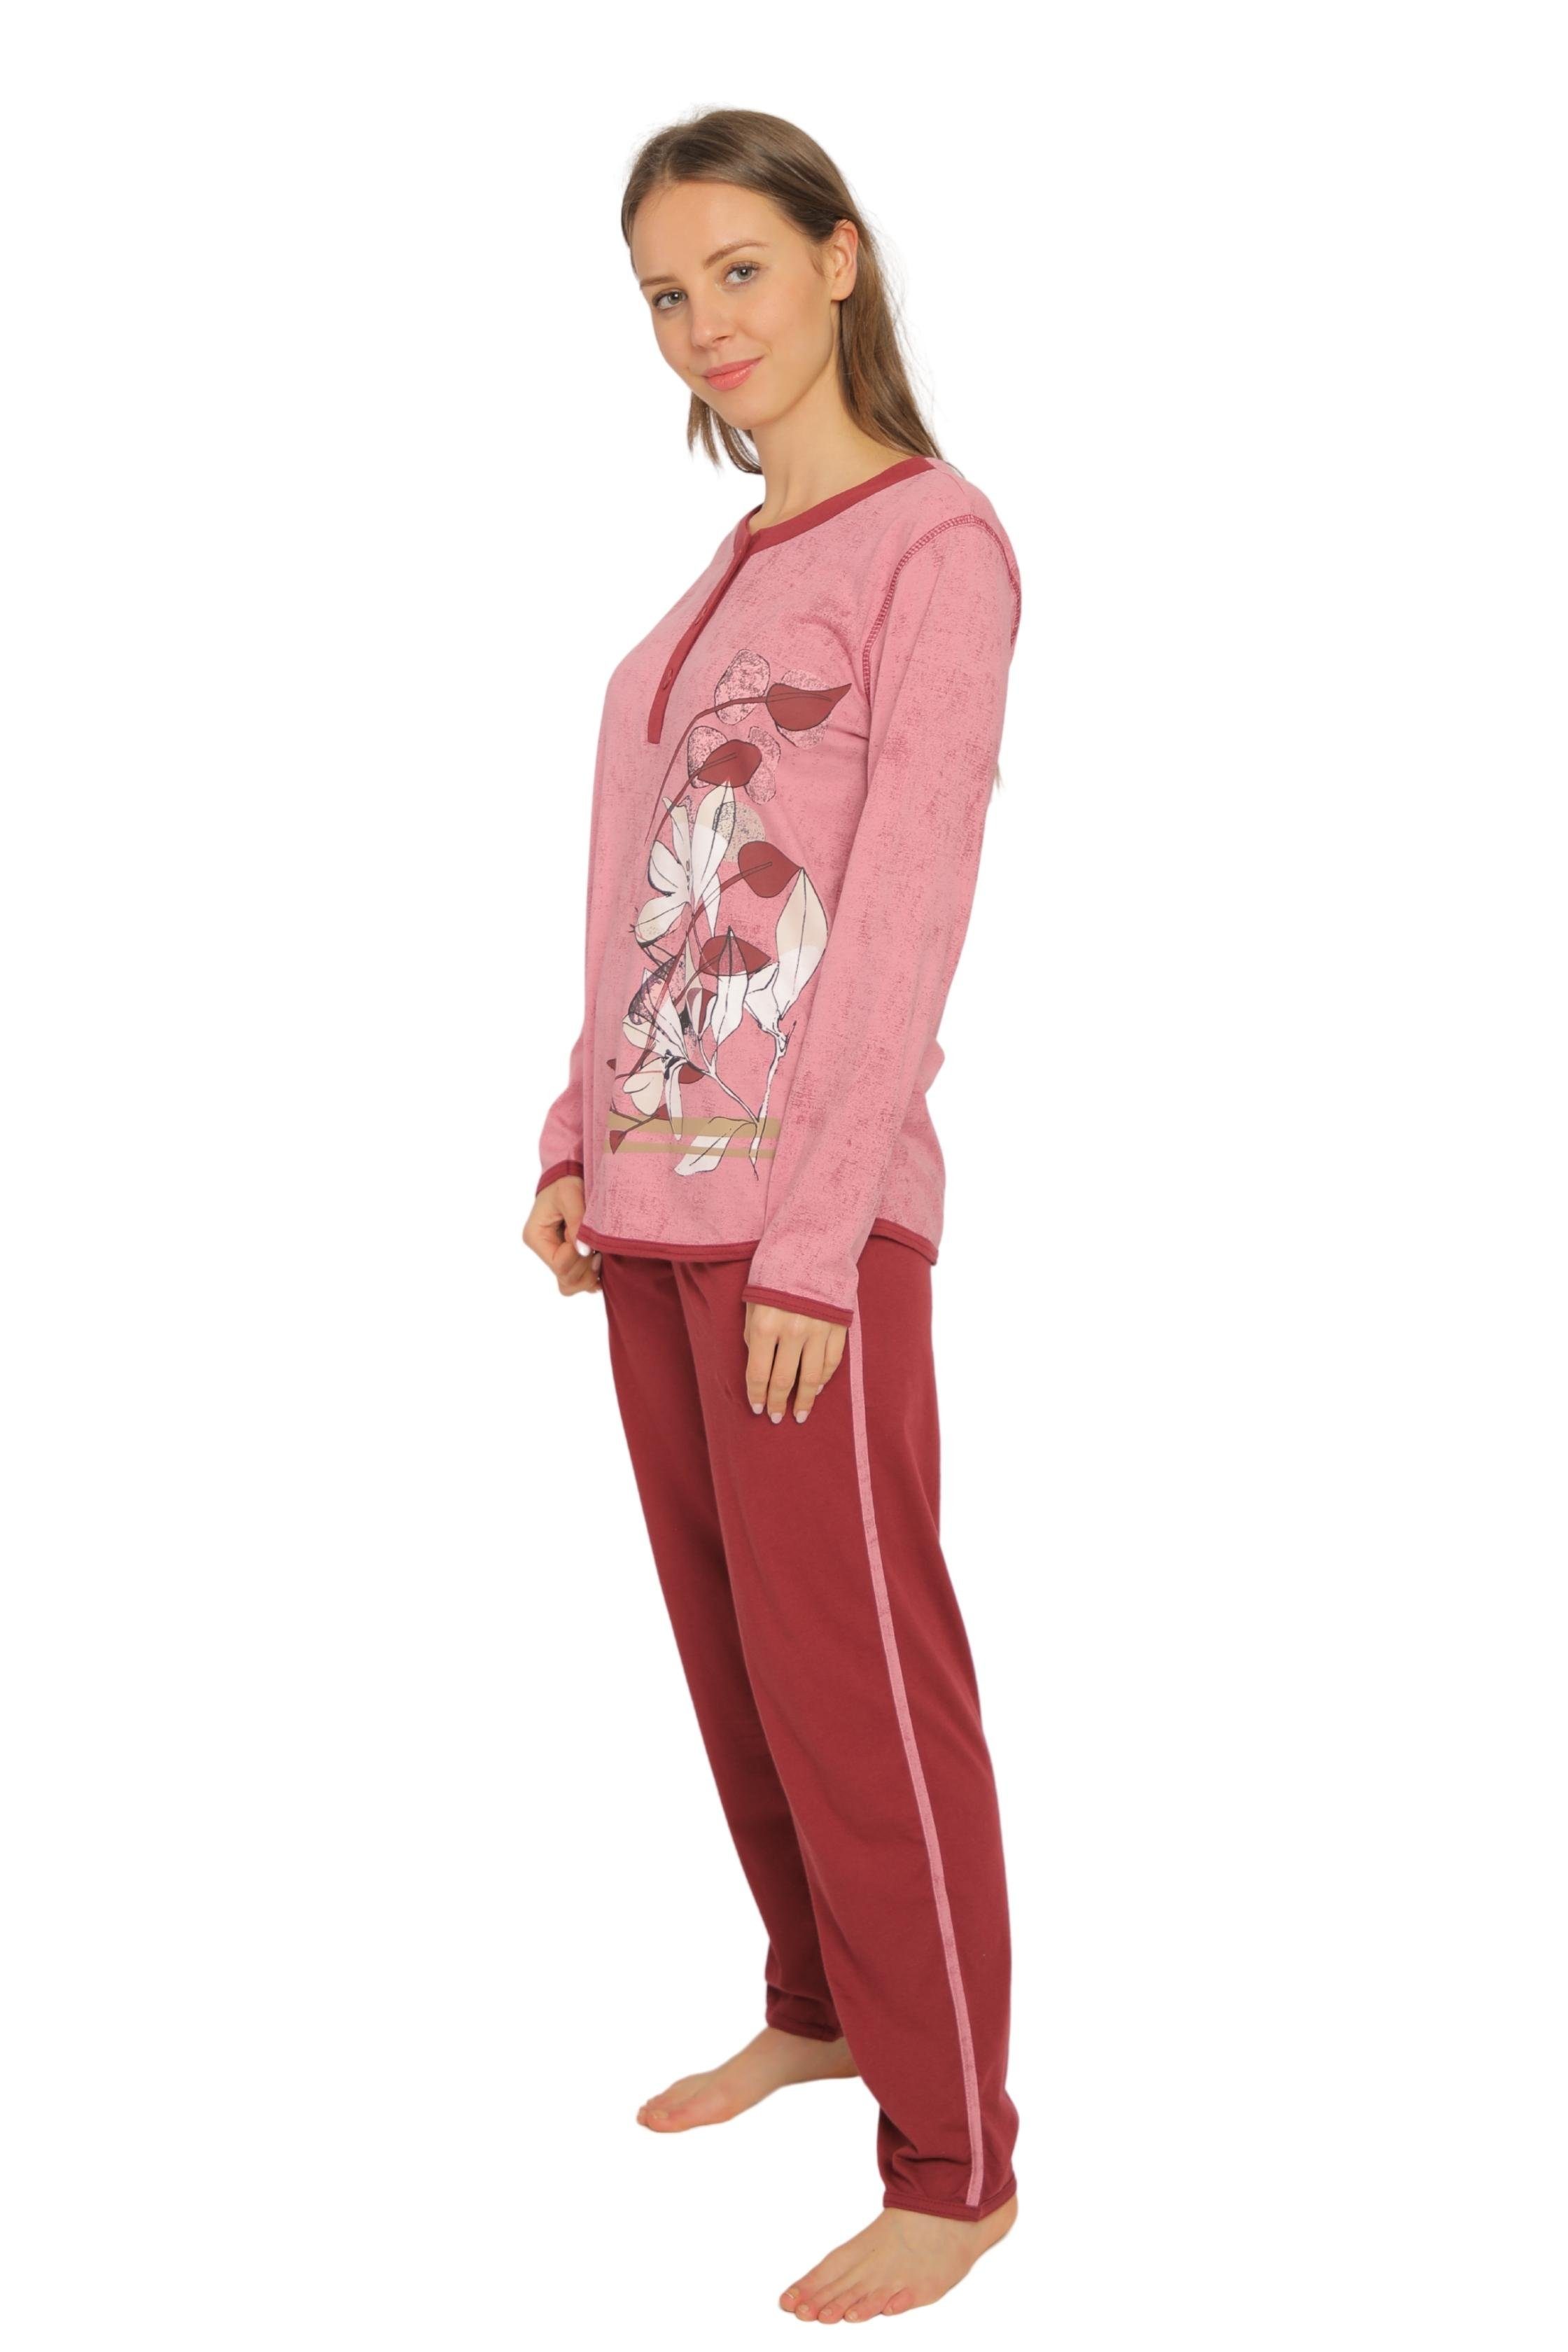 Consult-Tex Pyjama Damen Pyjama, Schlafanzug, Homewear Set DF419 (Packung) aus reiner Baumwolle-Jersey Qualität bordo